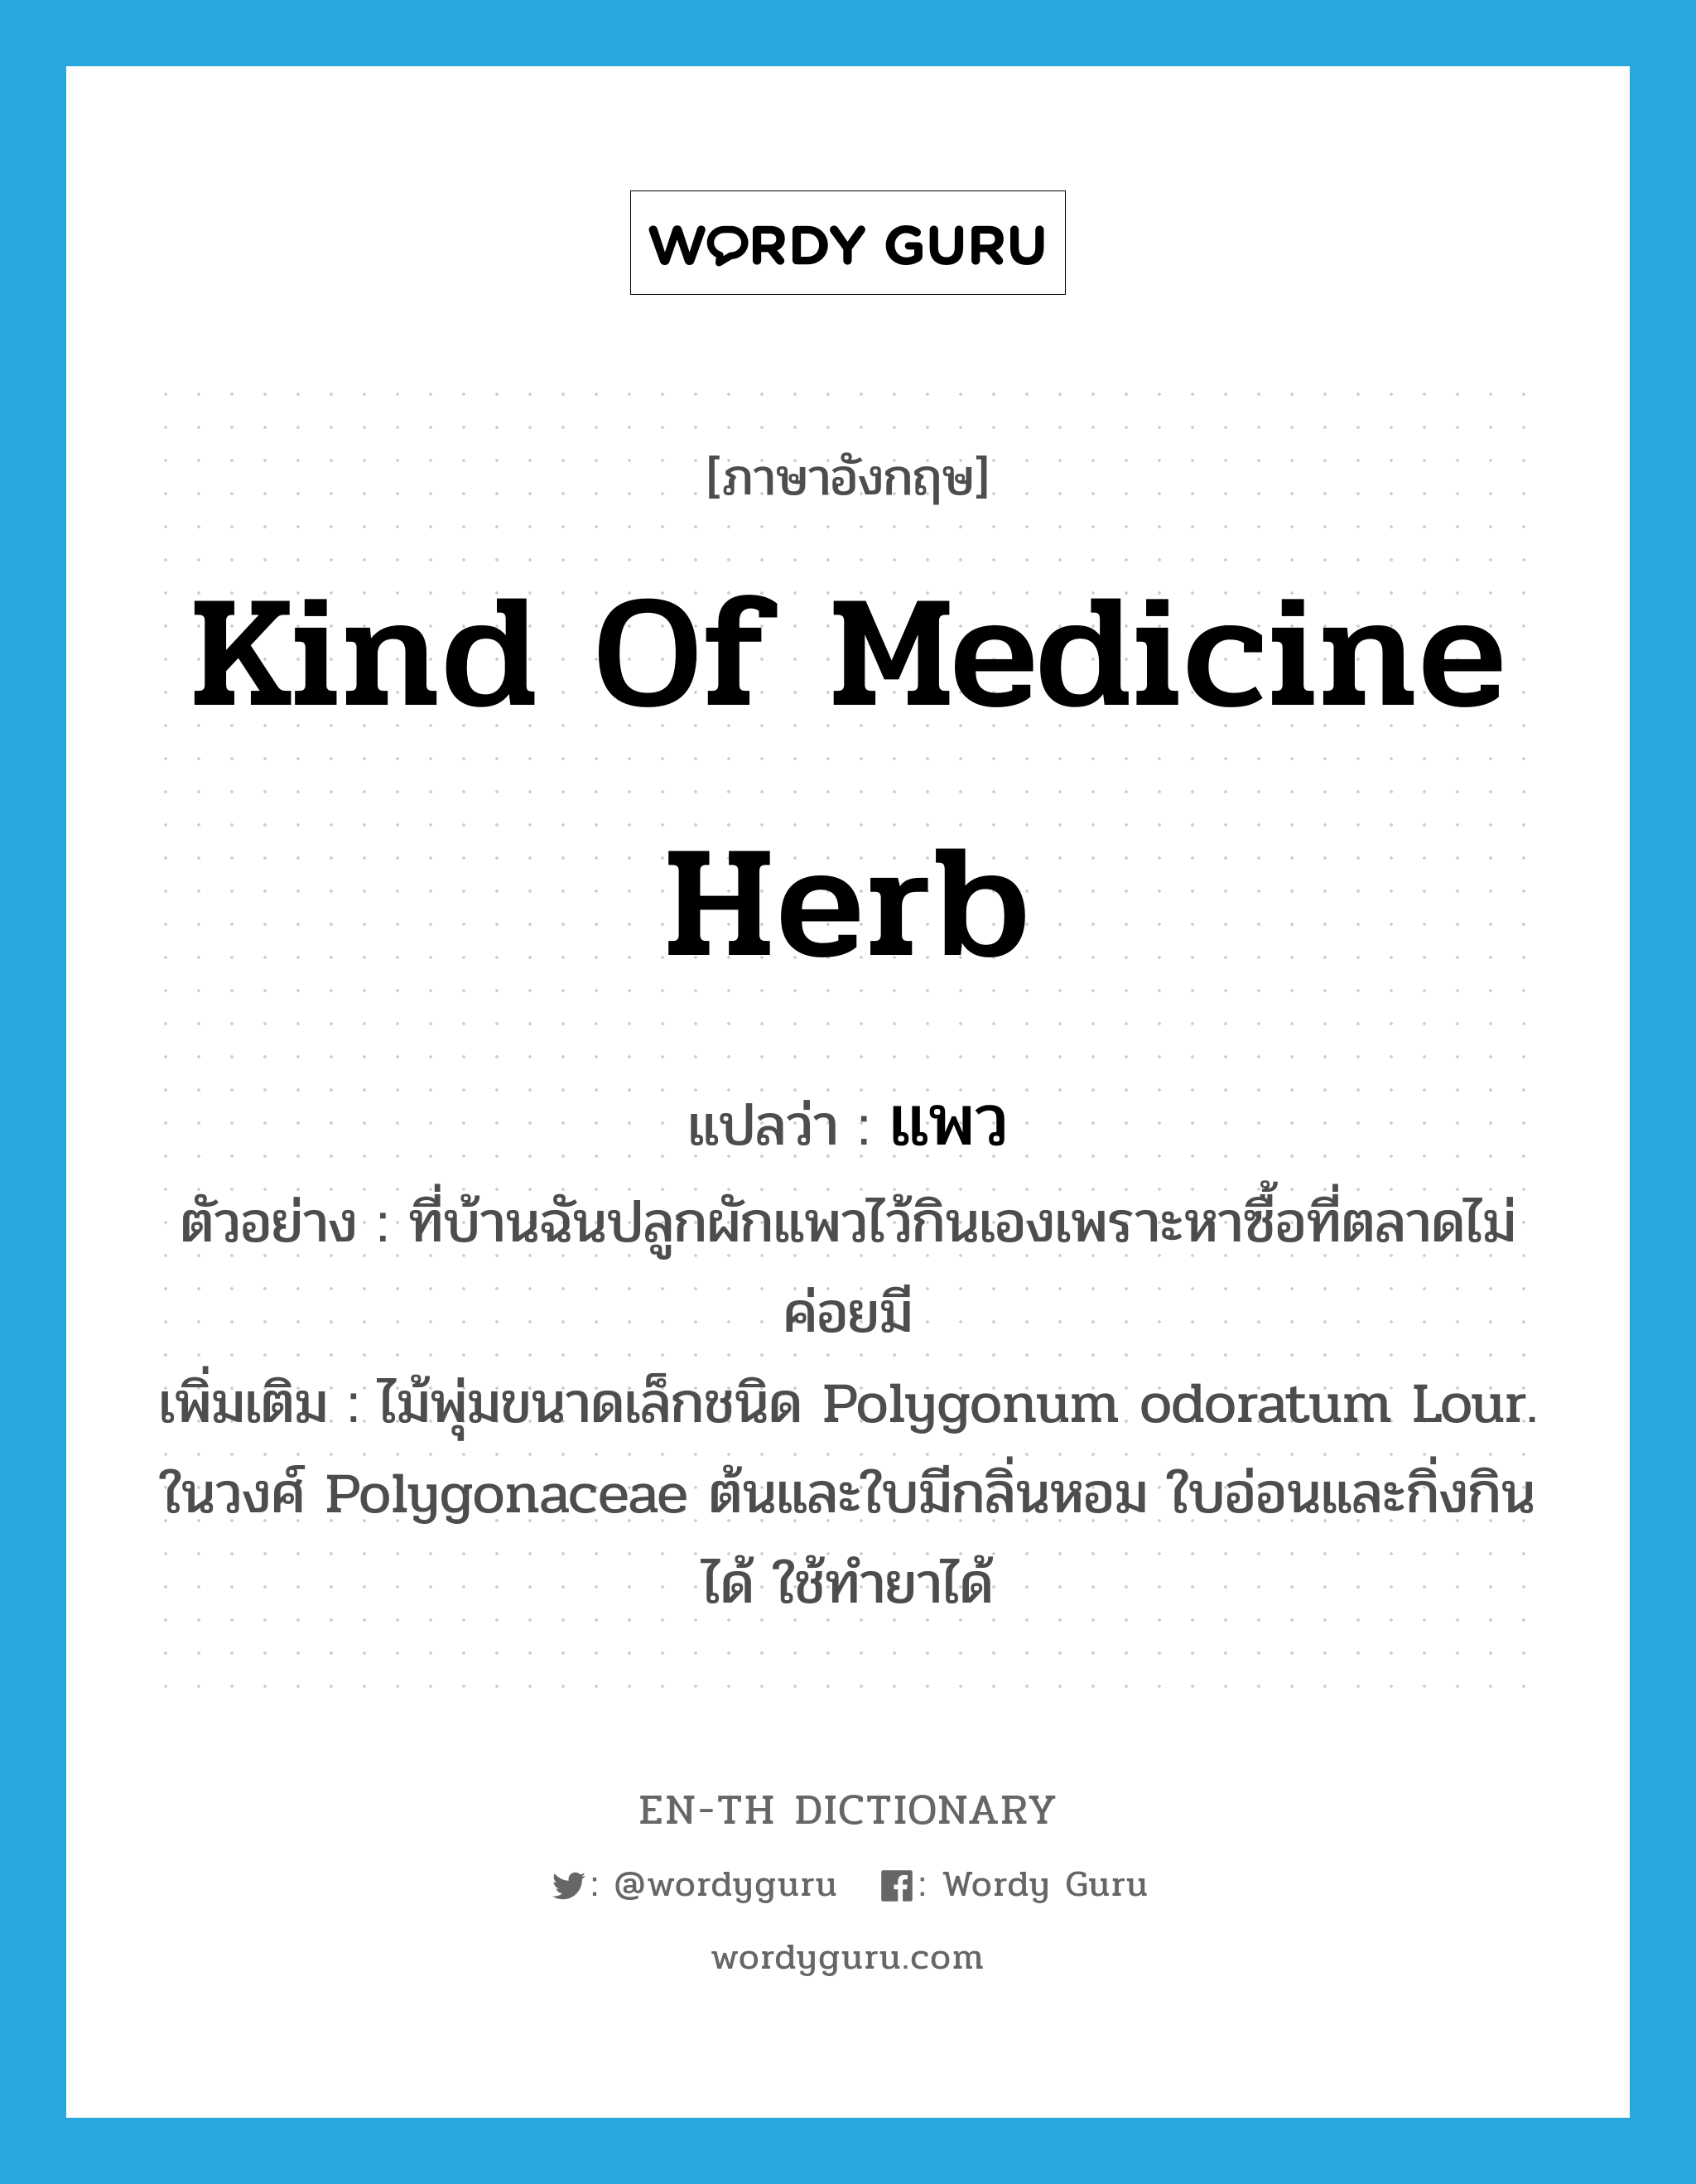 kind of medicine herb แปลว่า?, คำศัพท์ภาษาอังกฤษ kind of medicine herb แปลว่า แพว ประเภท N ตัวอย่าง ที่บ้านฉันปลูกผักแพวไว้กินเองเพราะหาซื้อที่ตลาดไม่ค่อยมี เพิ่มเติม ไม้พุ่มขนาดเล็กชนิด Polygonum odoratum Lour. ในวงศ์ Polygonaceae ต้นและใบมีกลิ่นหอม ใบอ่อนและกิ่งกินได้ ใช้ทำยาได้ หมวด N